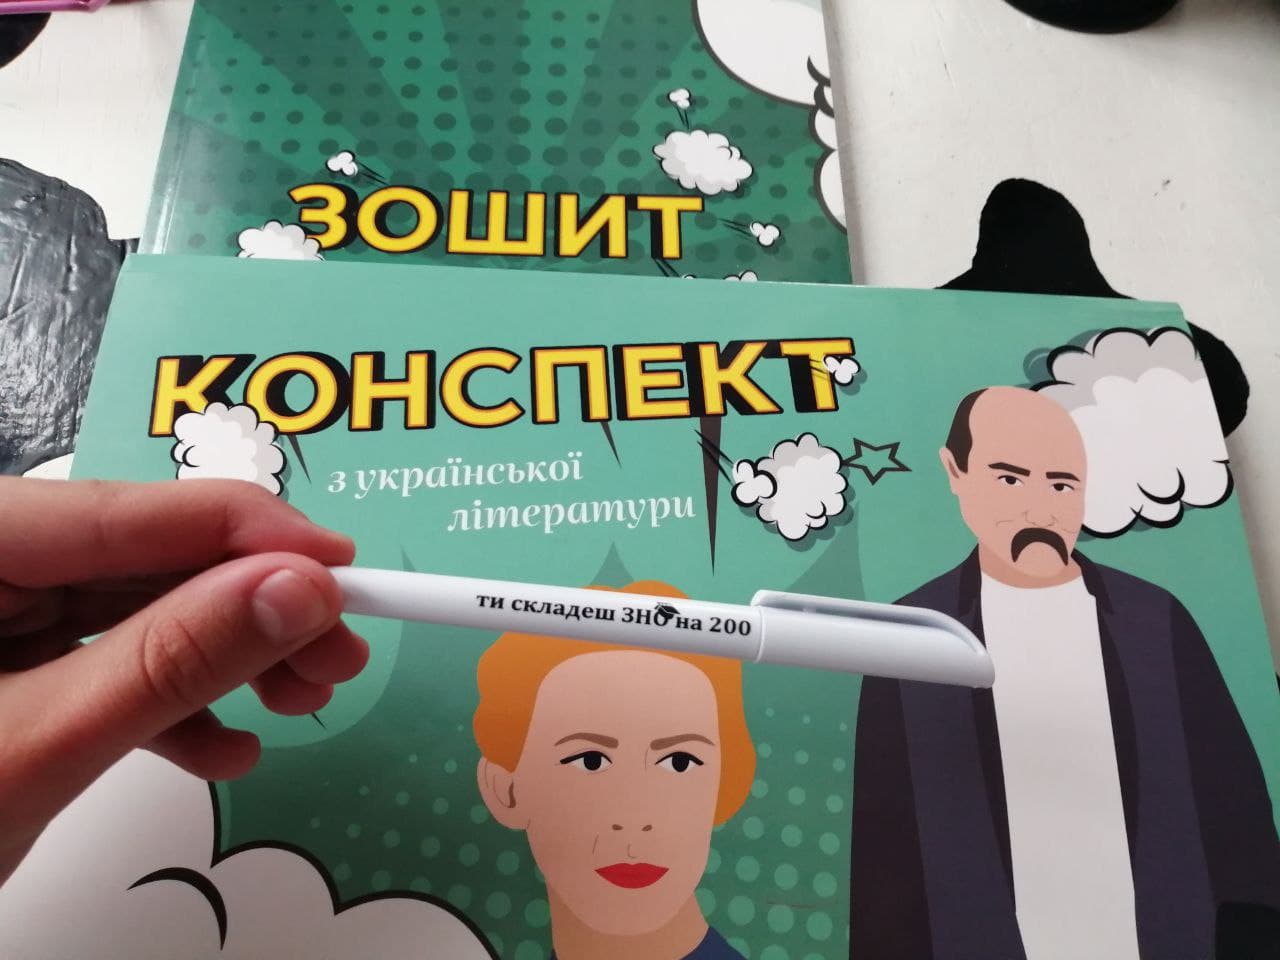 📒 Як почати готуватися до мультимедійного тесту з української мови?